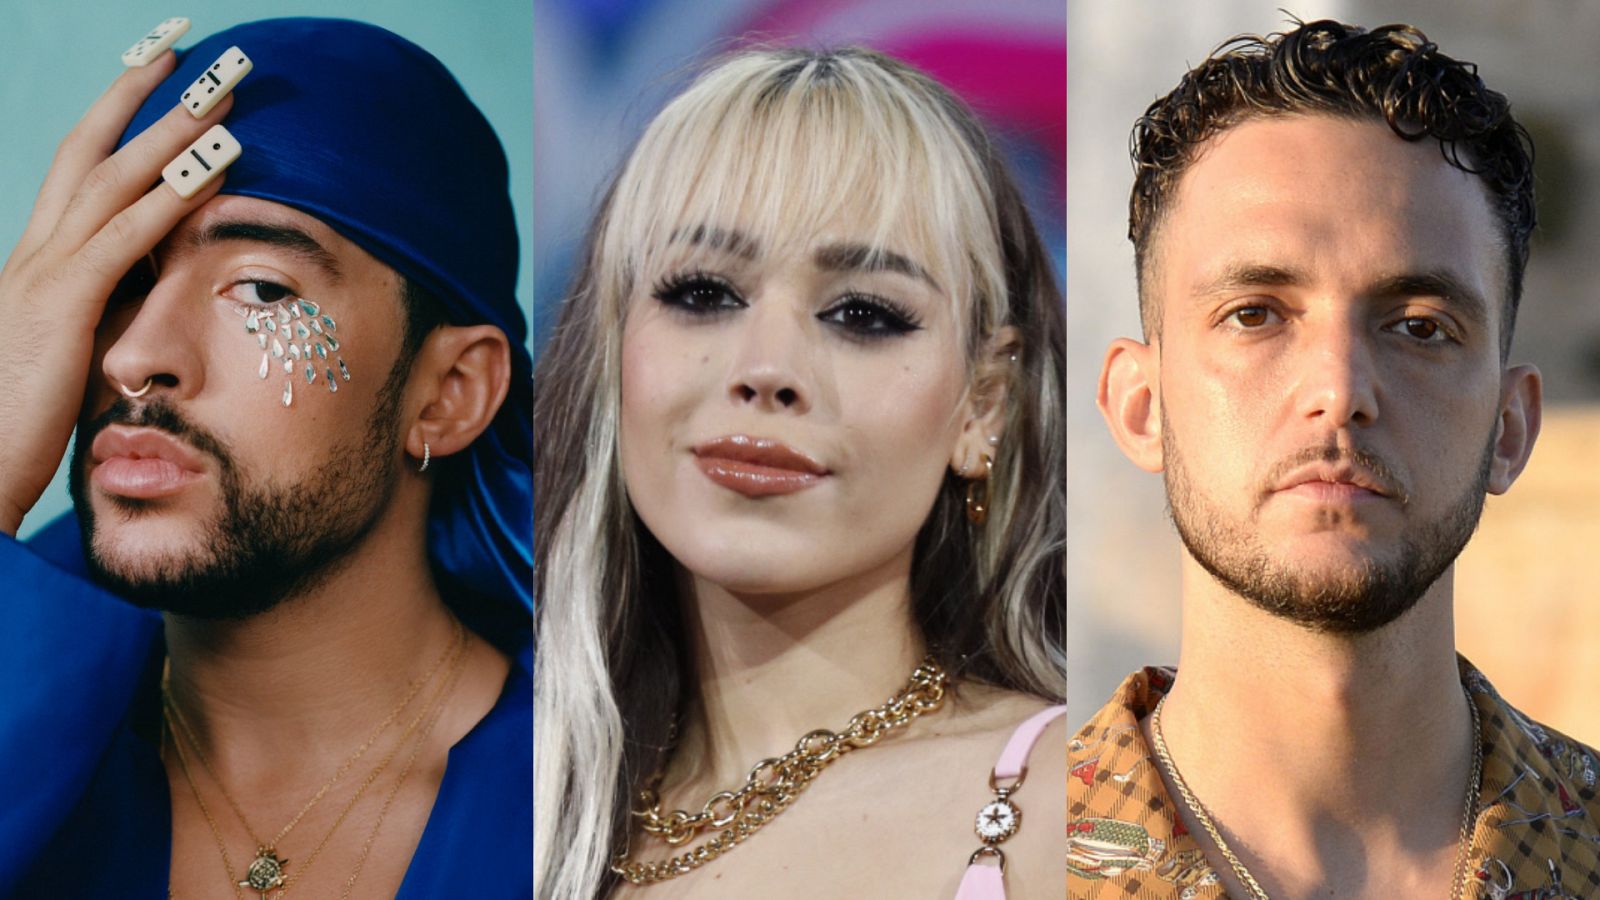  Bad Bunny, Danna Paola y C. Tangana, entre los artistas confirmados de los Latin Grammy 2021